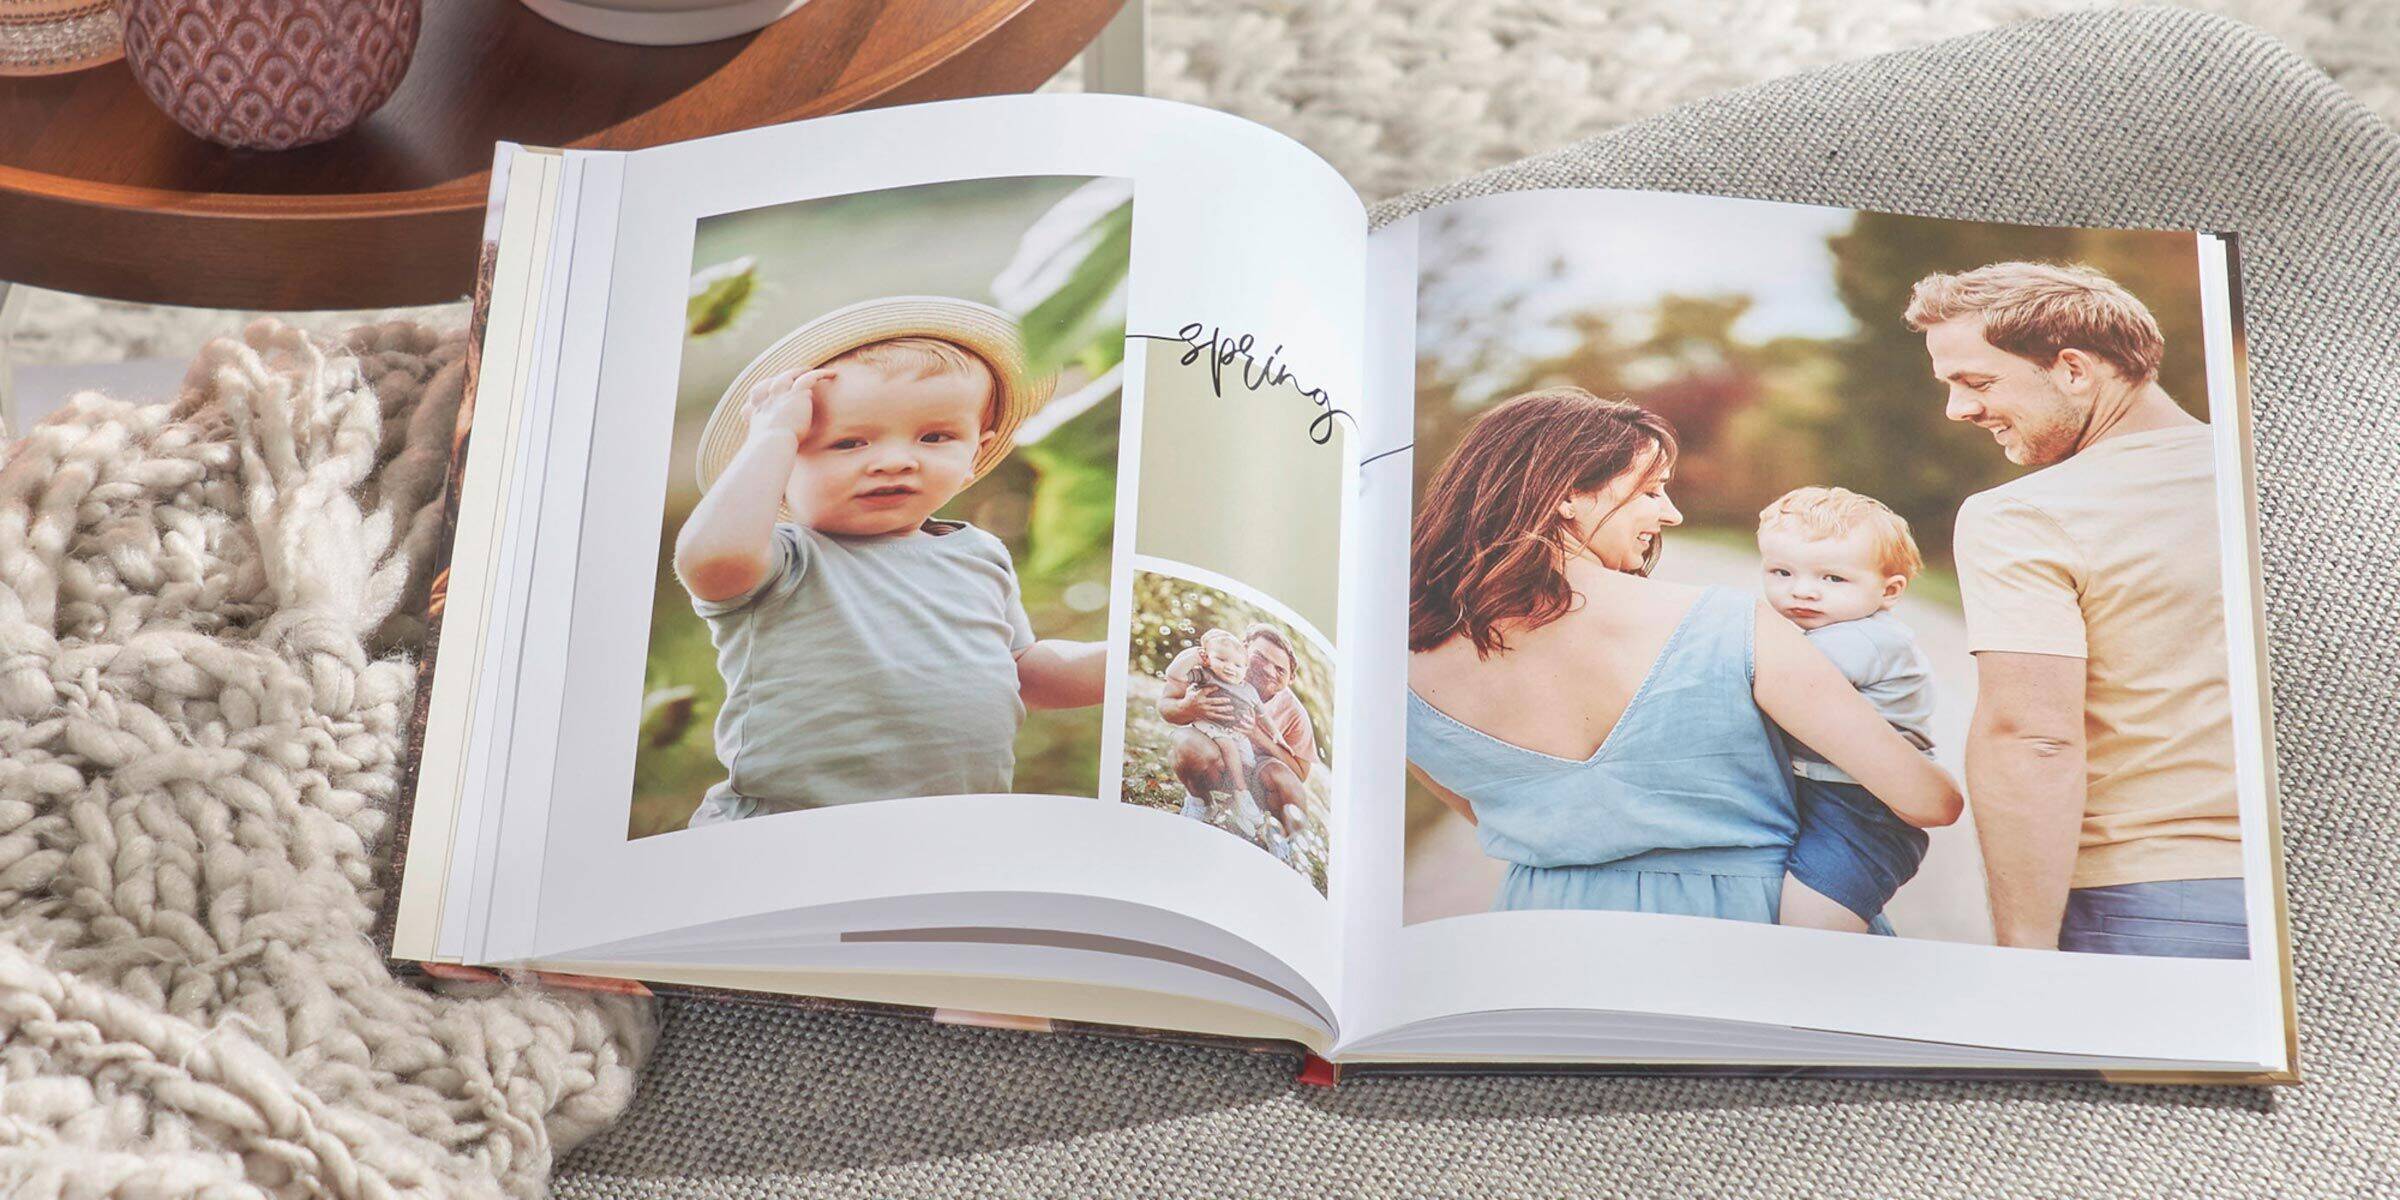 le pagine di un fotolibro di famiglia a tema primaverile